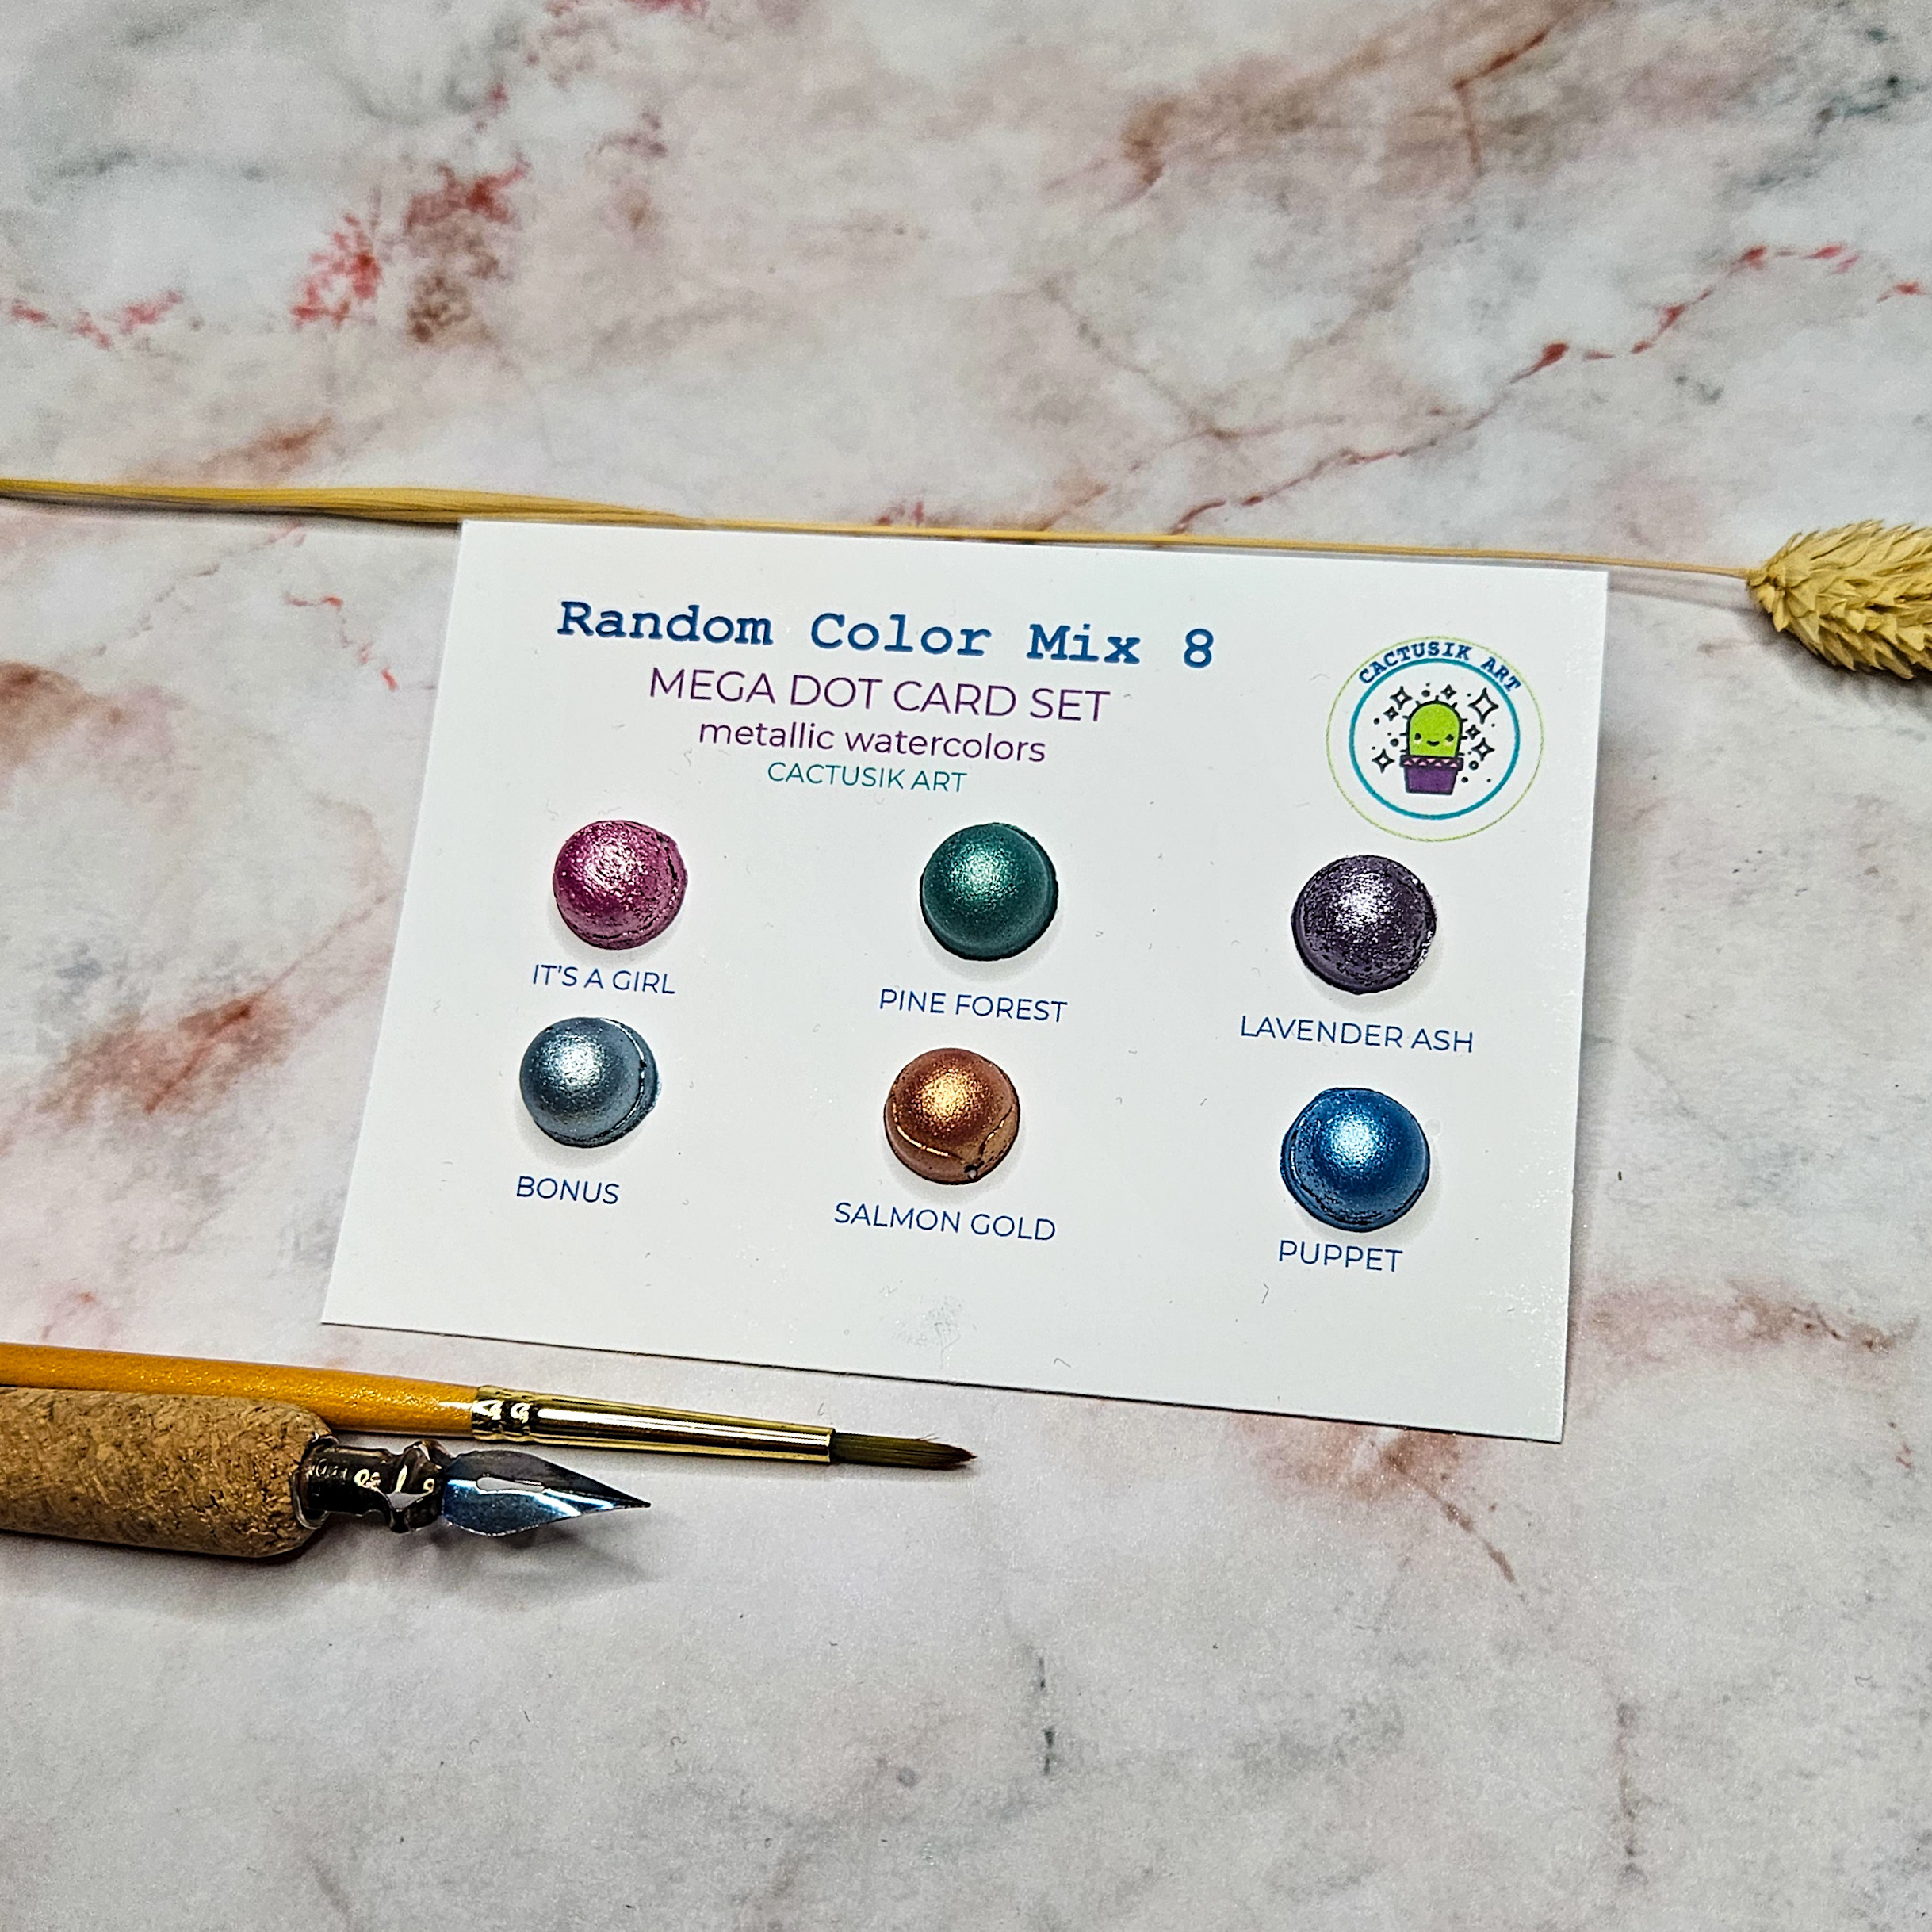 Random Color Mix 8 – Mega Dot Card Set